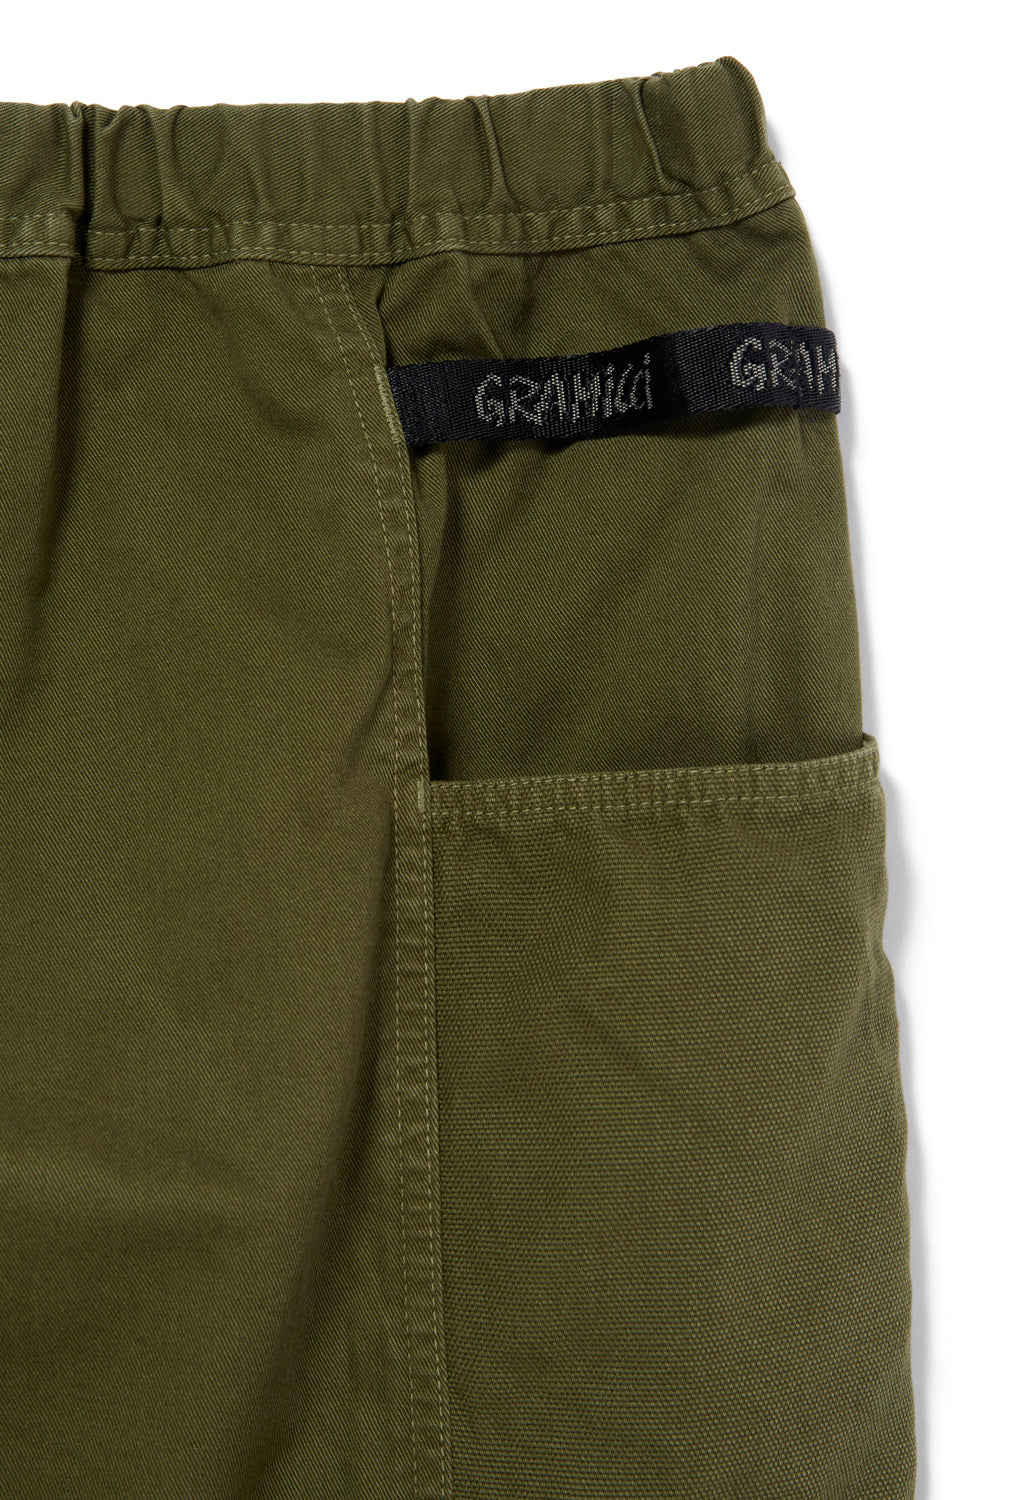 Gramicci Men's Gadget Shorts - Olive